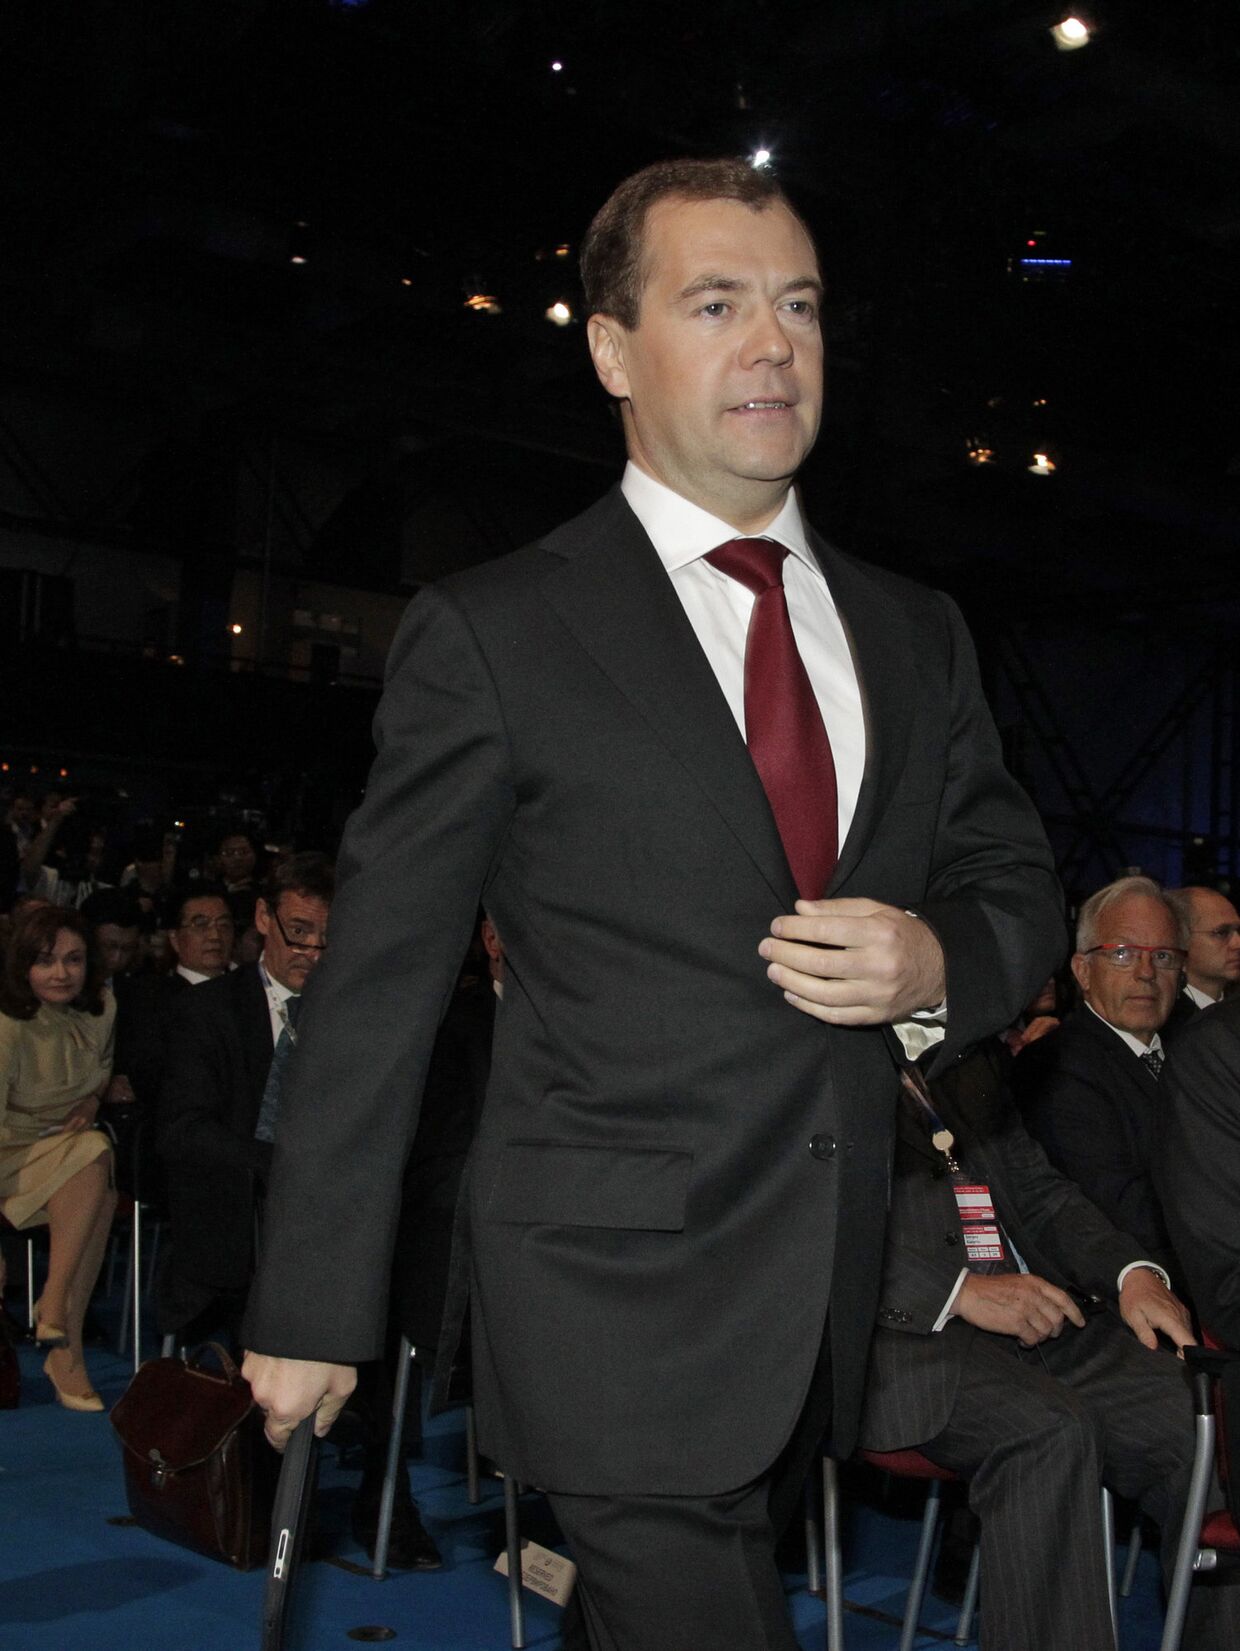 Дмитрий Медведев открывает XV Петербургский международный экономический форум